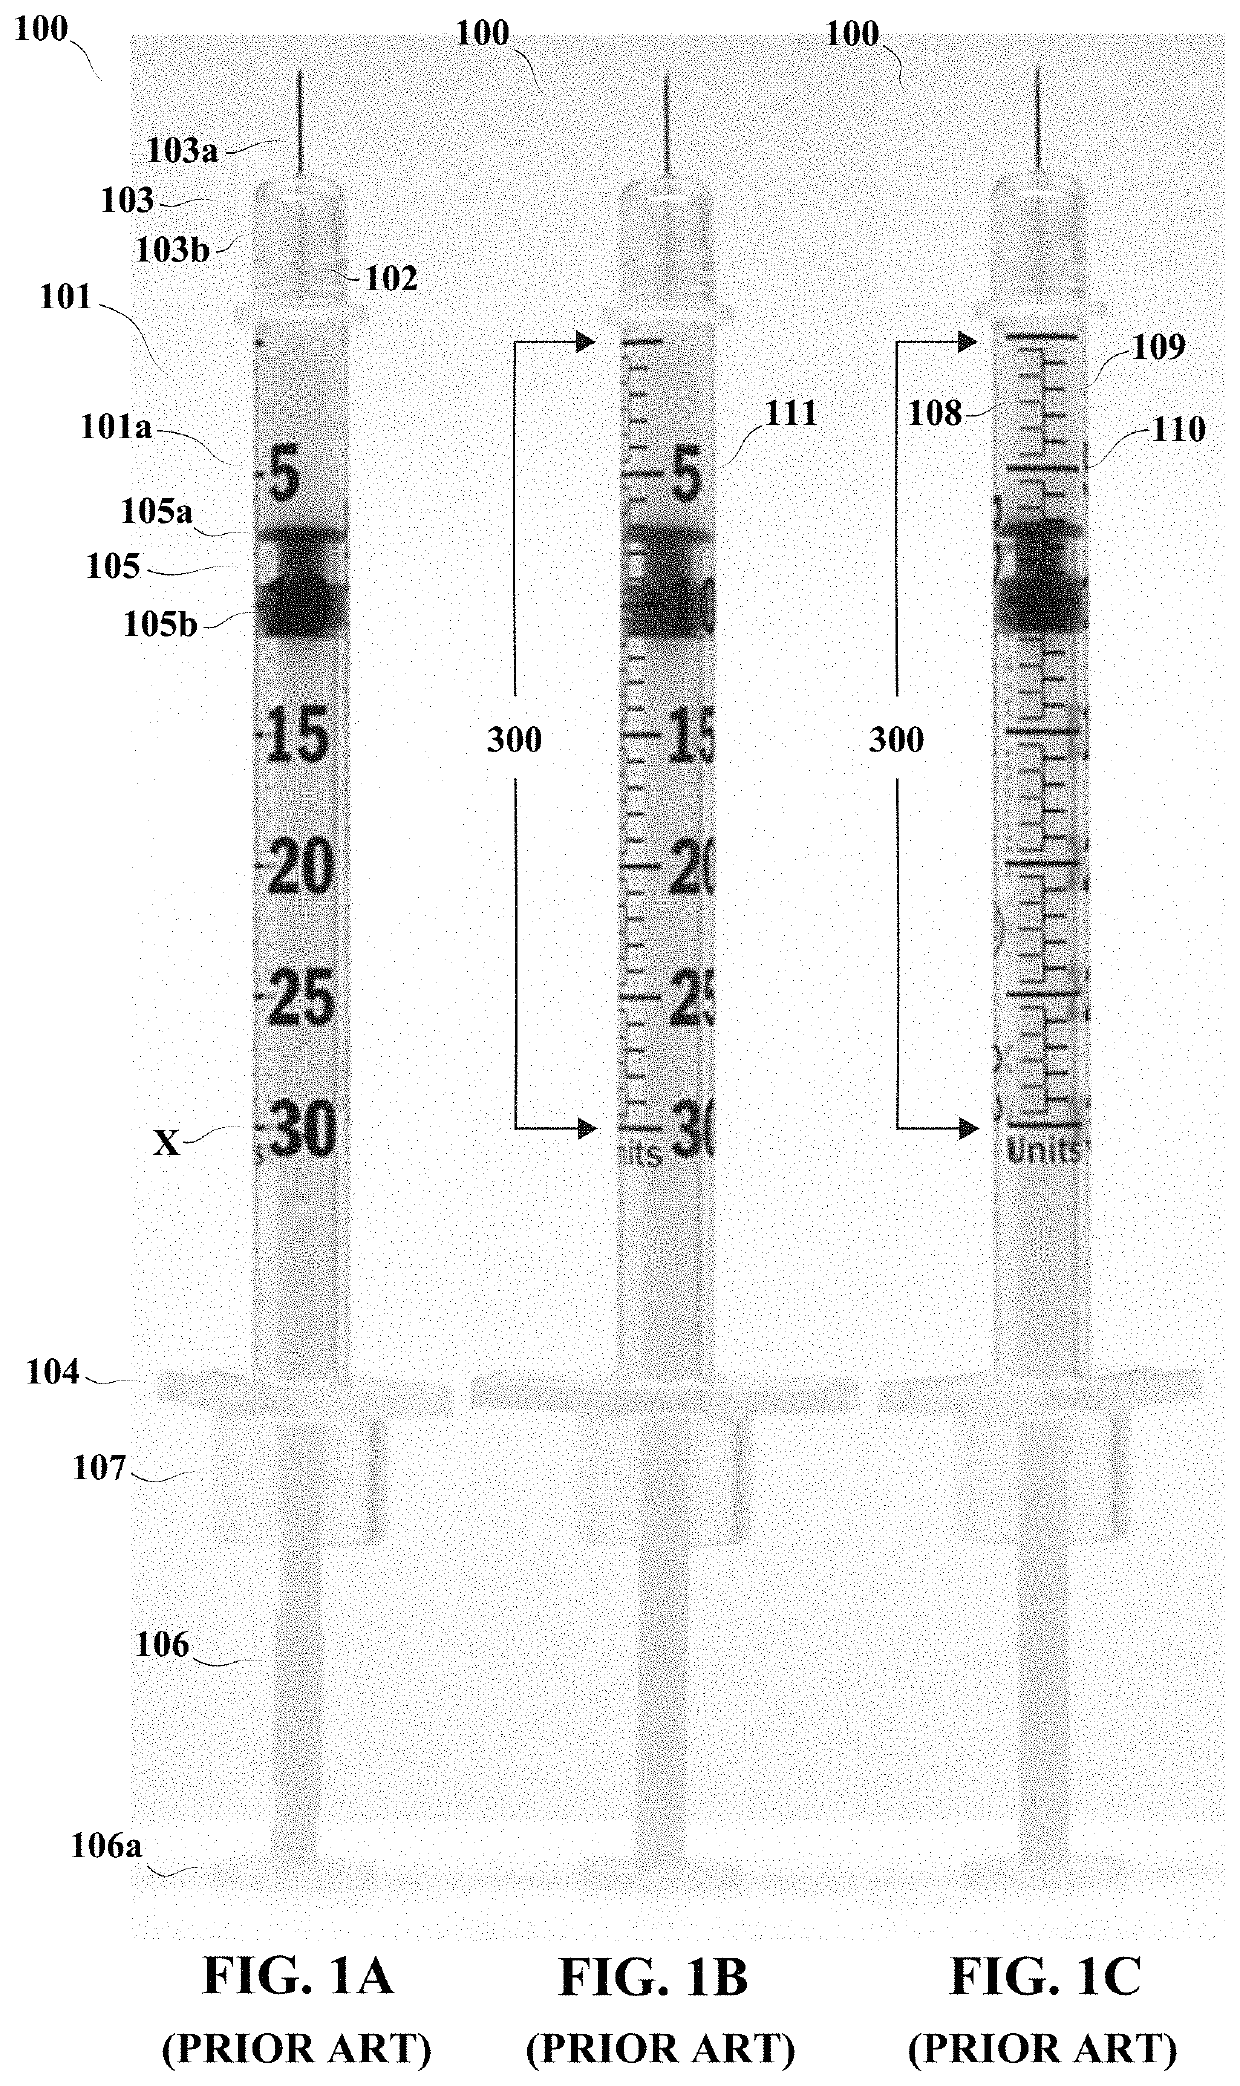 Syringe barrel with improved scale presentation